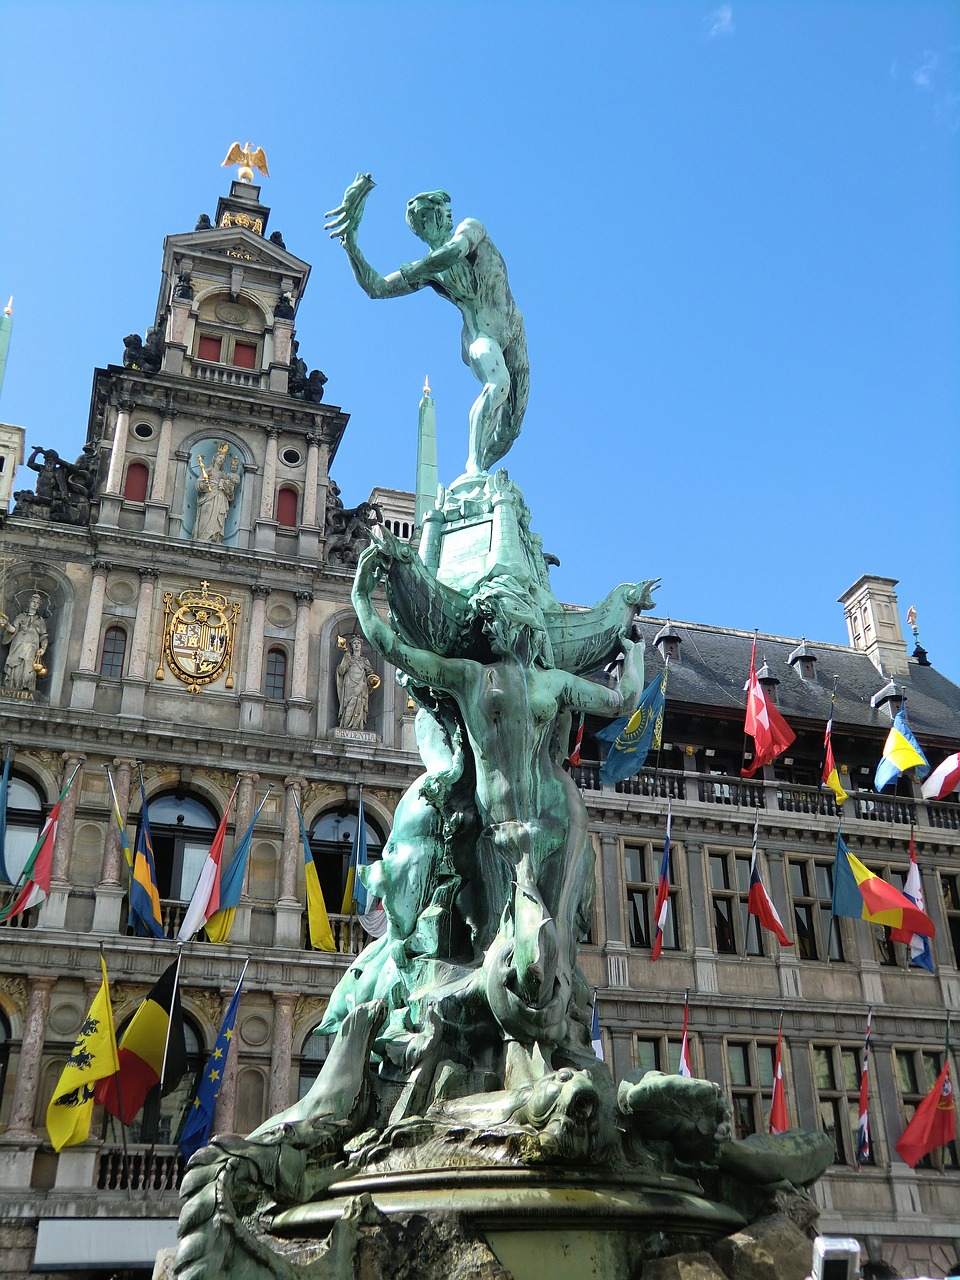 Antwerp.jpg